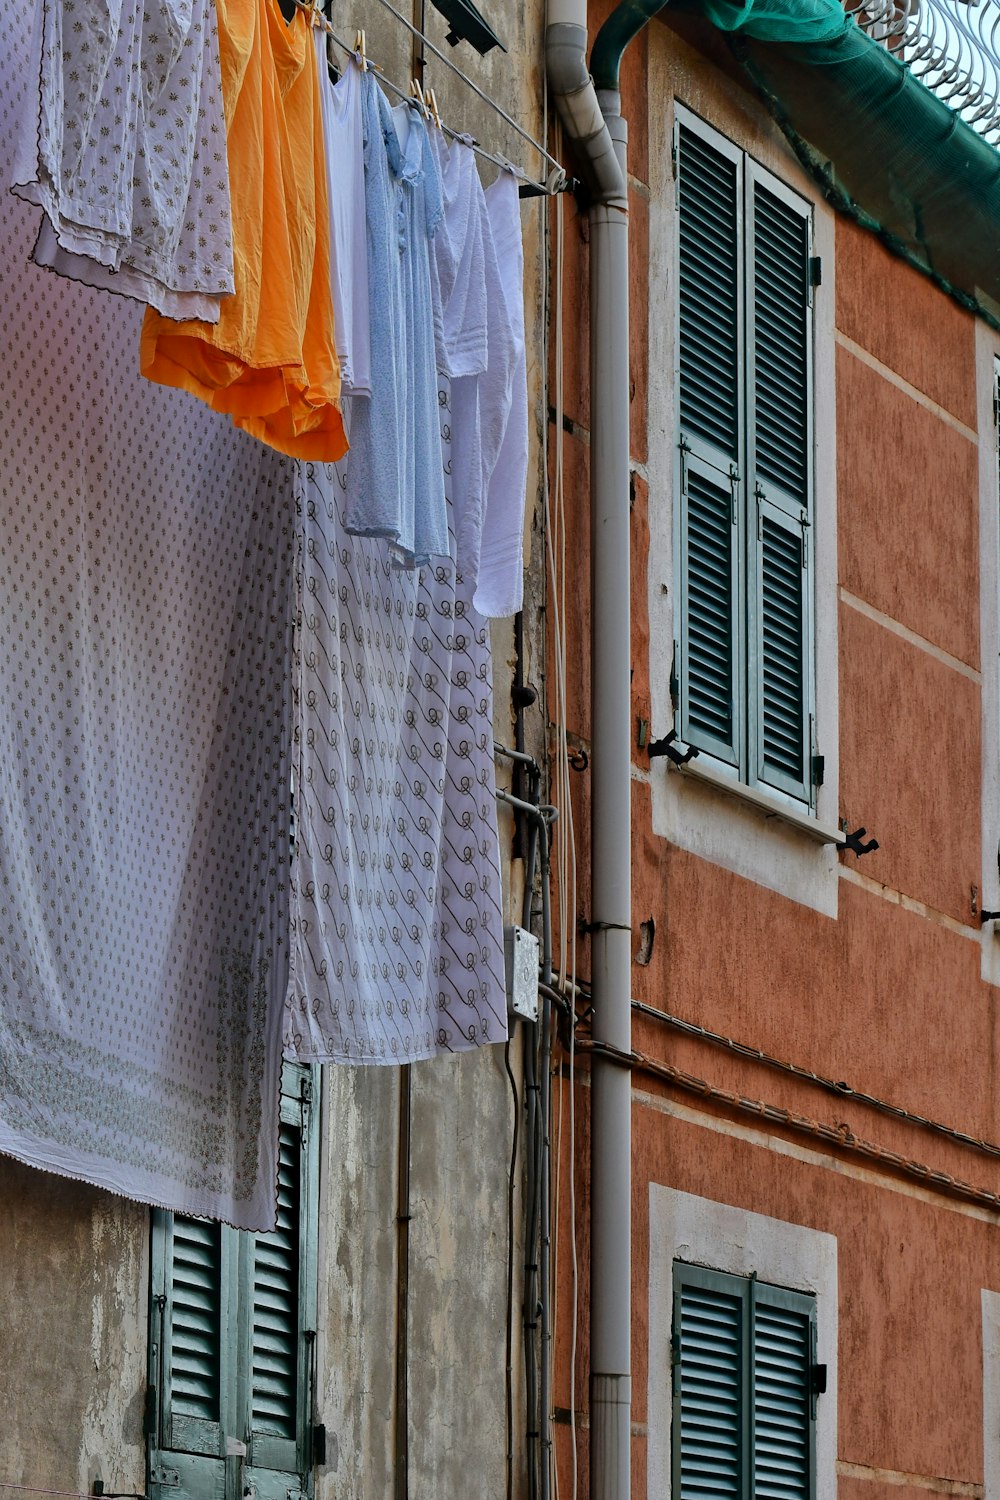 roupas penduradas em um varal fora de um prédio